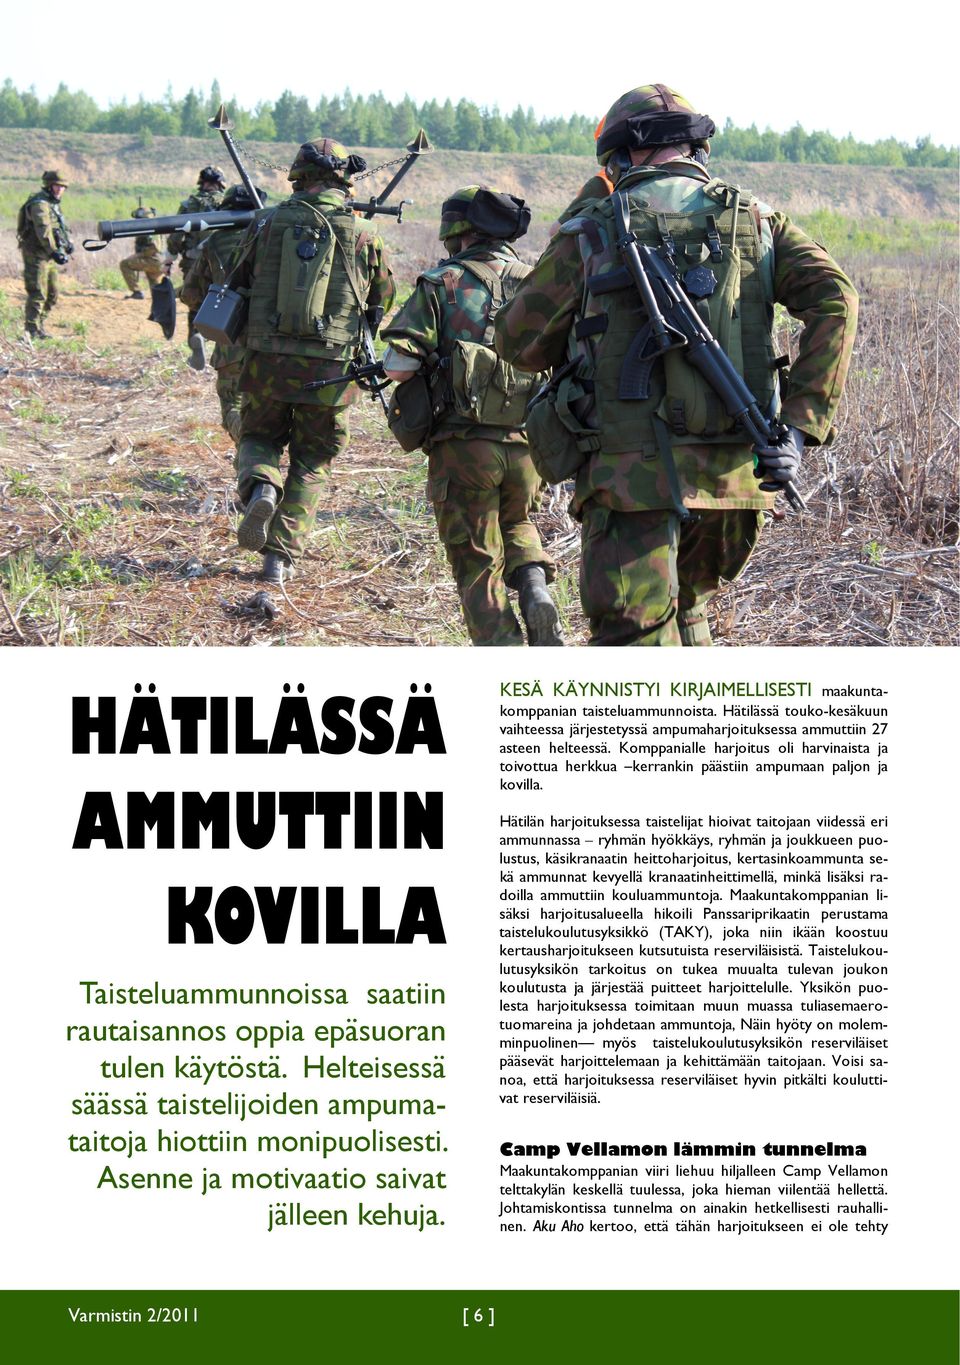 HÄTILÄSSÄ AMMUTTIIN KOVILLA Hätilän harjoituksessa taistelijat hioivat taitojaan viidessä eri ammunnassa ryhmän hyökkäys, ryhmän ja joukkueen puolustus, käsikranaatin heittoharjoitus,